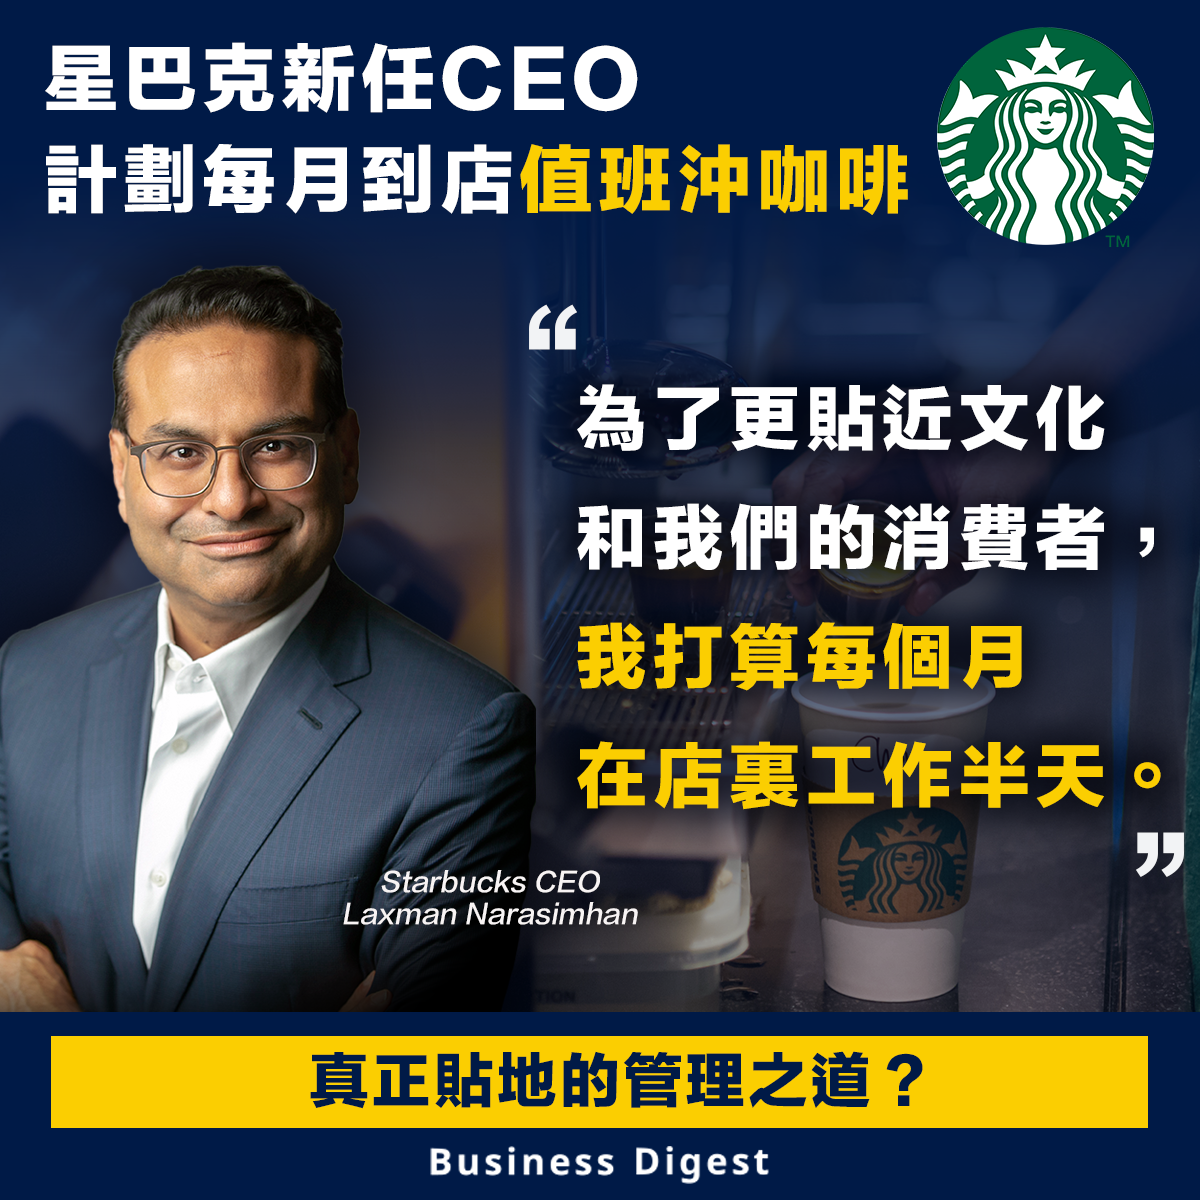 星巴克新任CEO計劃每月到店值班沖咖啡